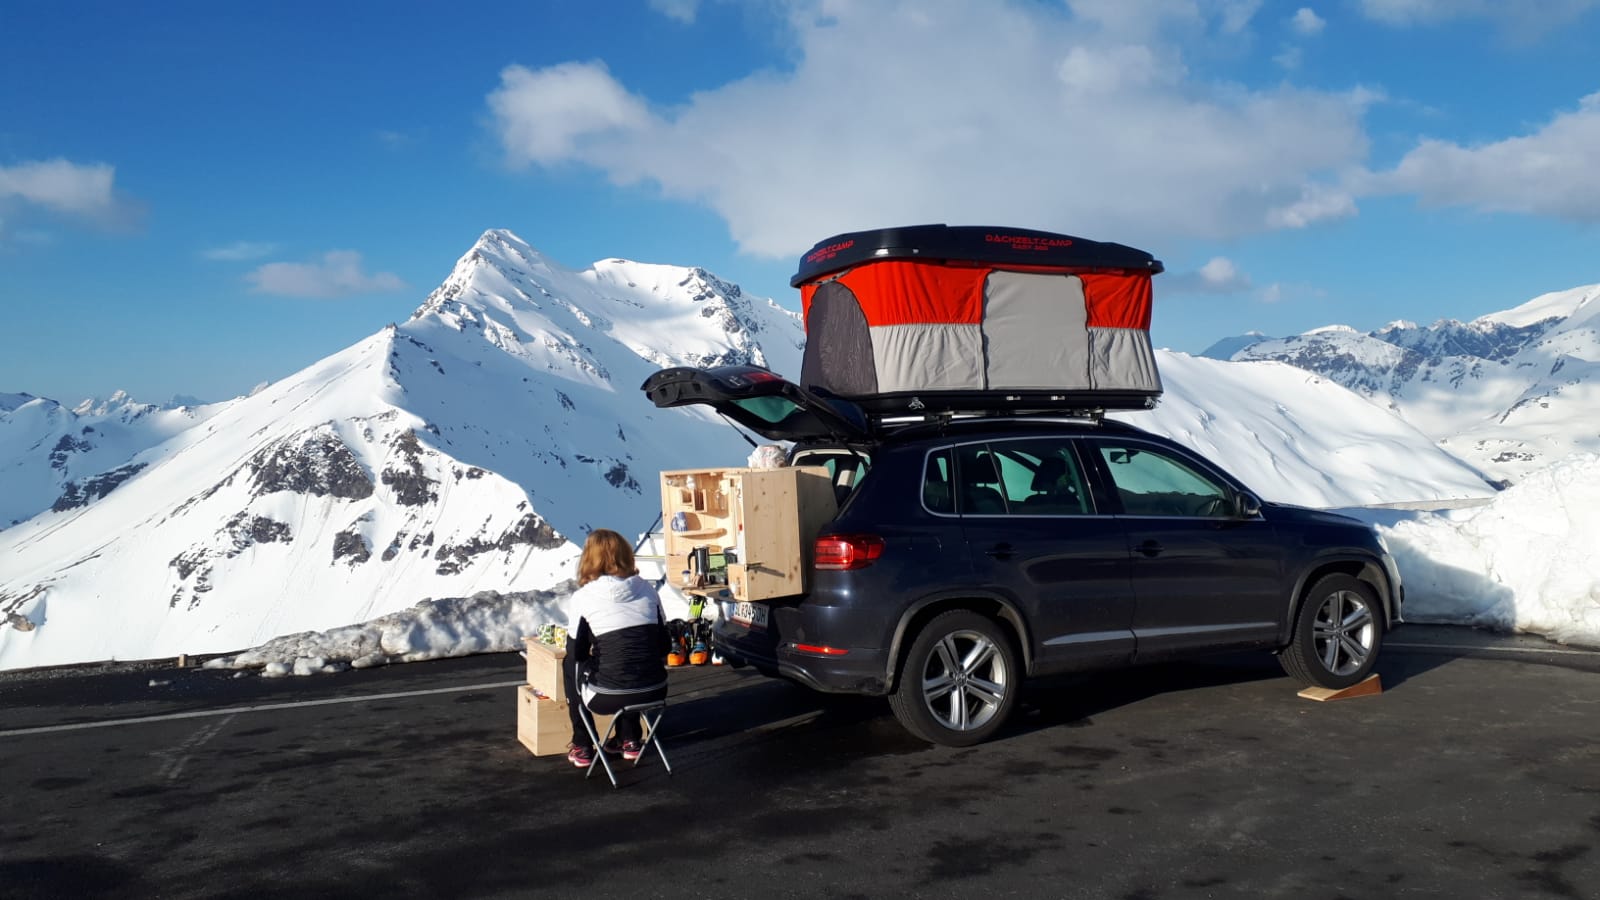 Brothers Camp Araç Üstü Çadır Deneyimleri (Alp Dağları)